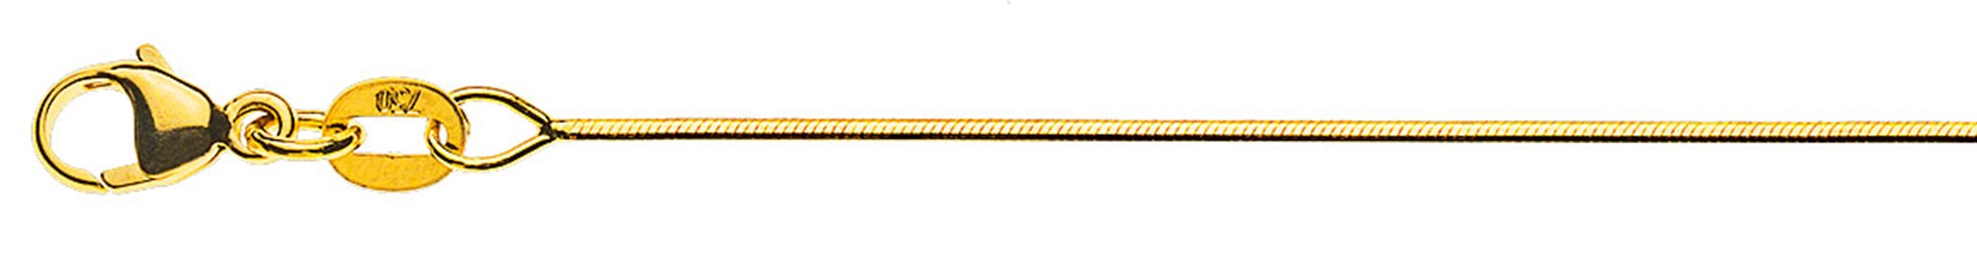 AURONOS Prestige Halskette Gelbgold 18K Schlangenkette diamantiert 38cm 0.8mm